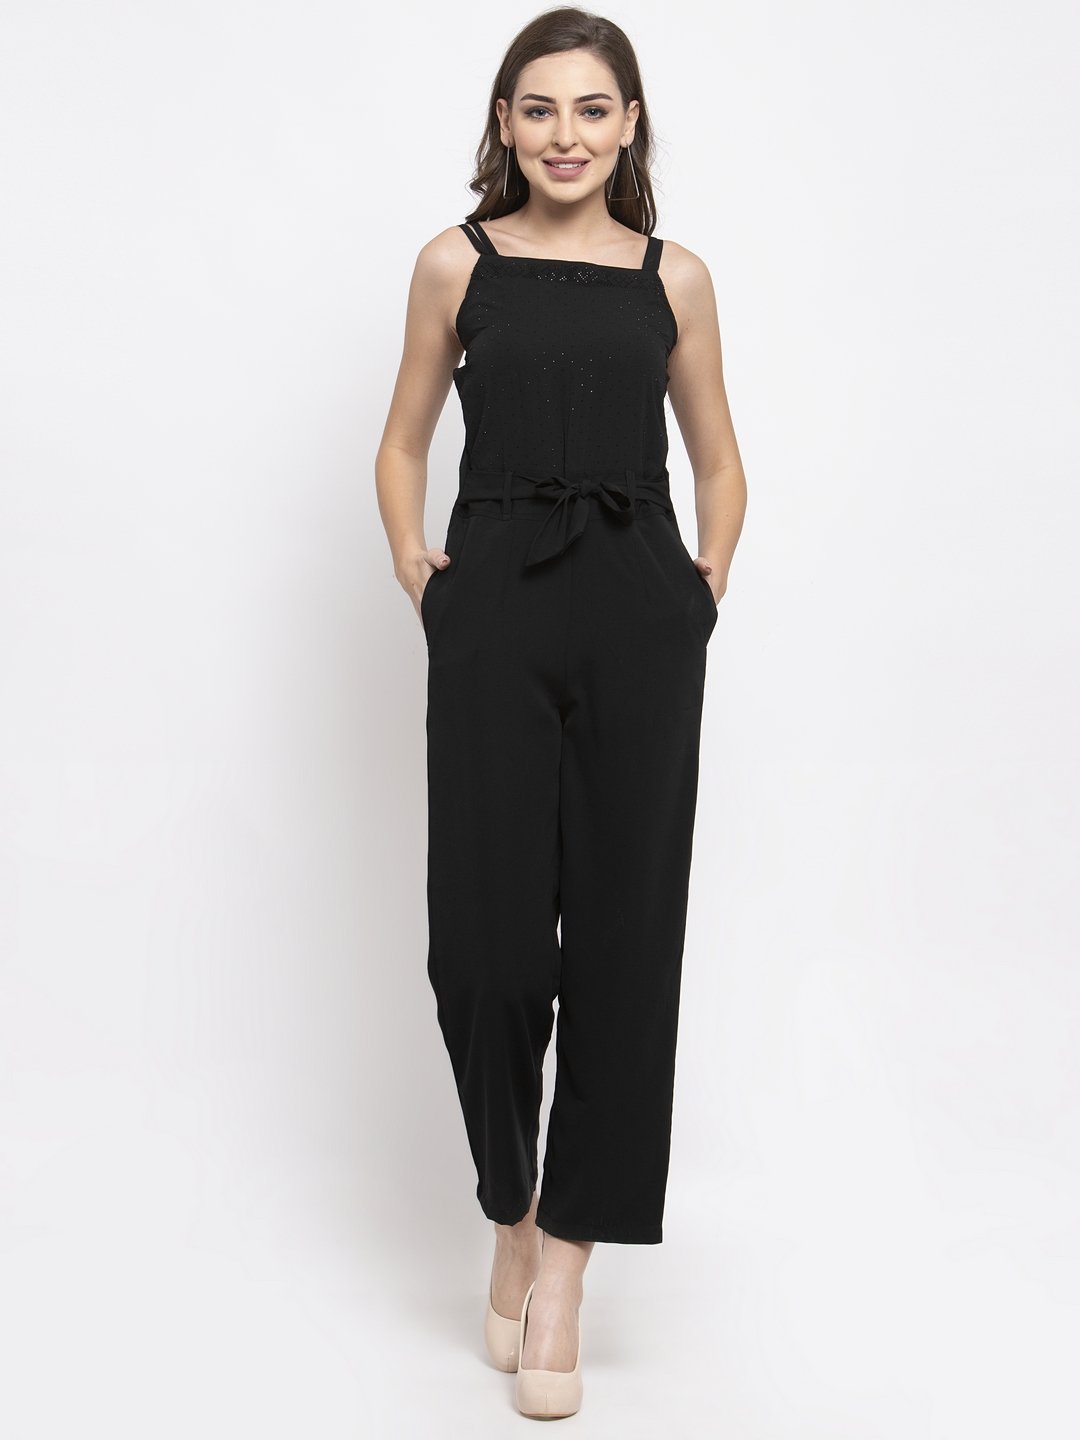 Women's Black Solid Embellished Jumpsuit - Jompers